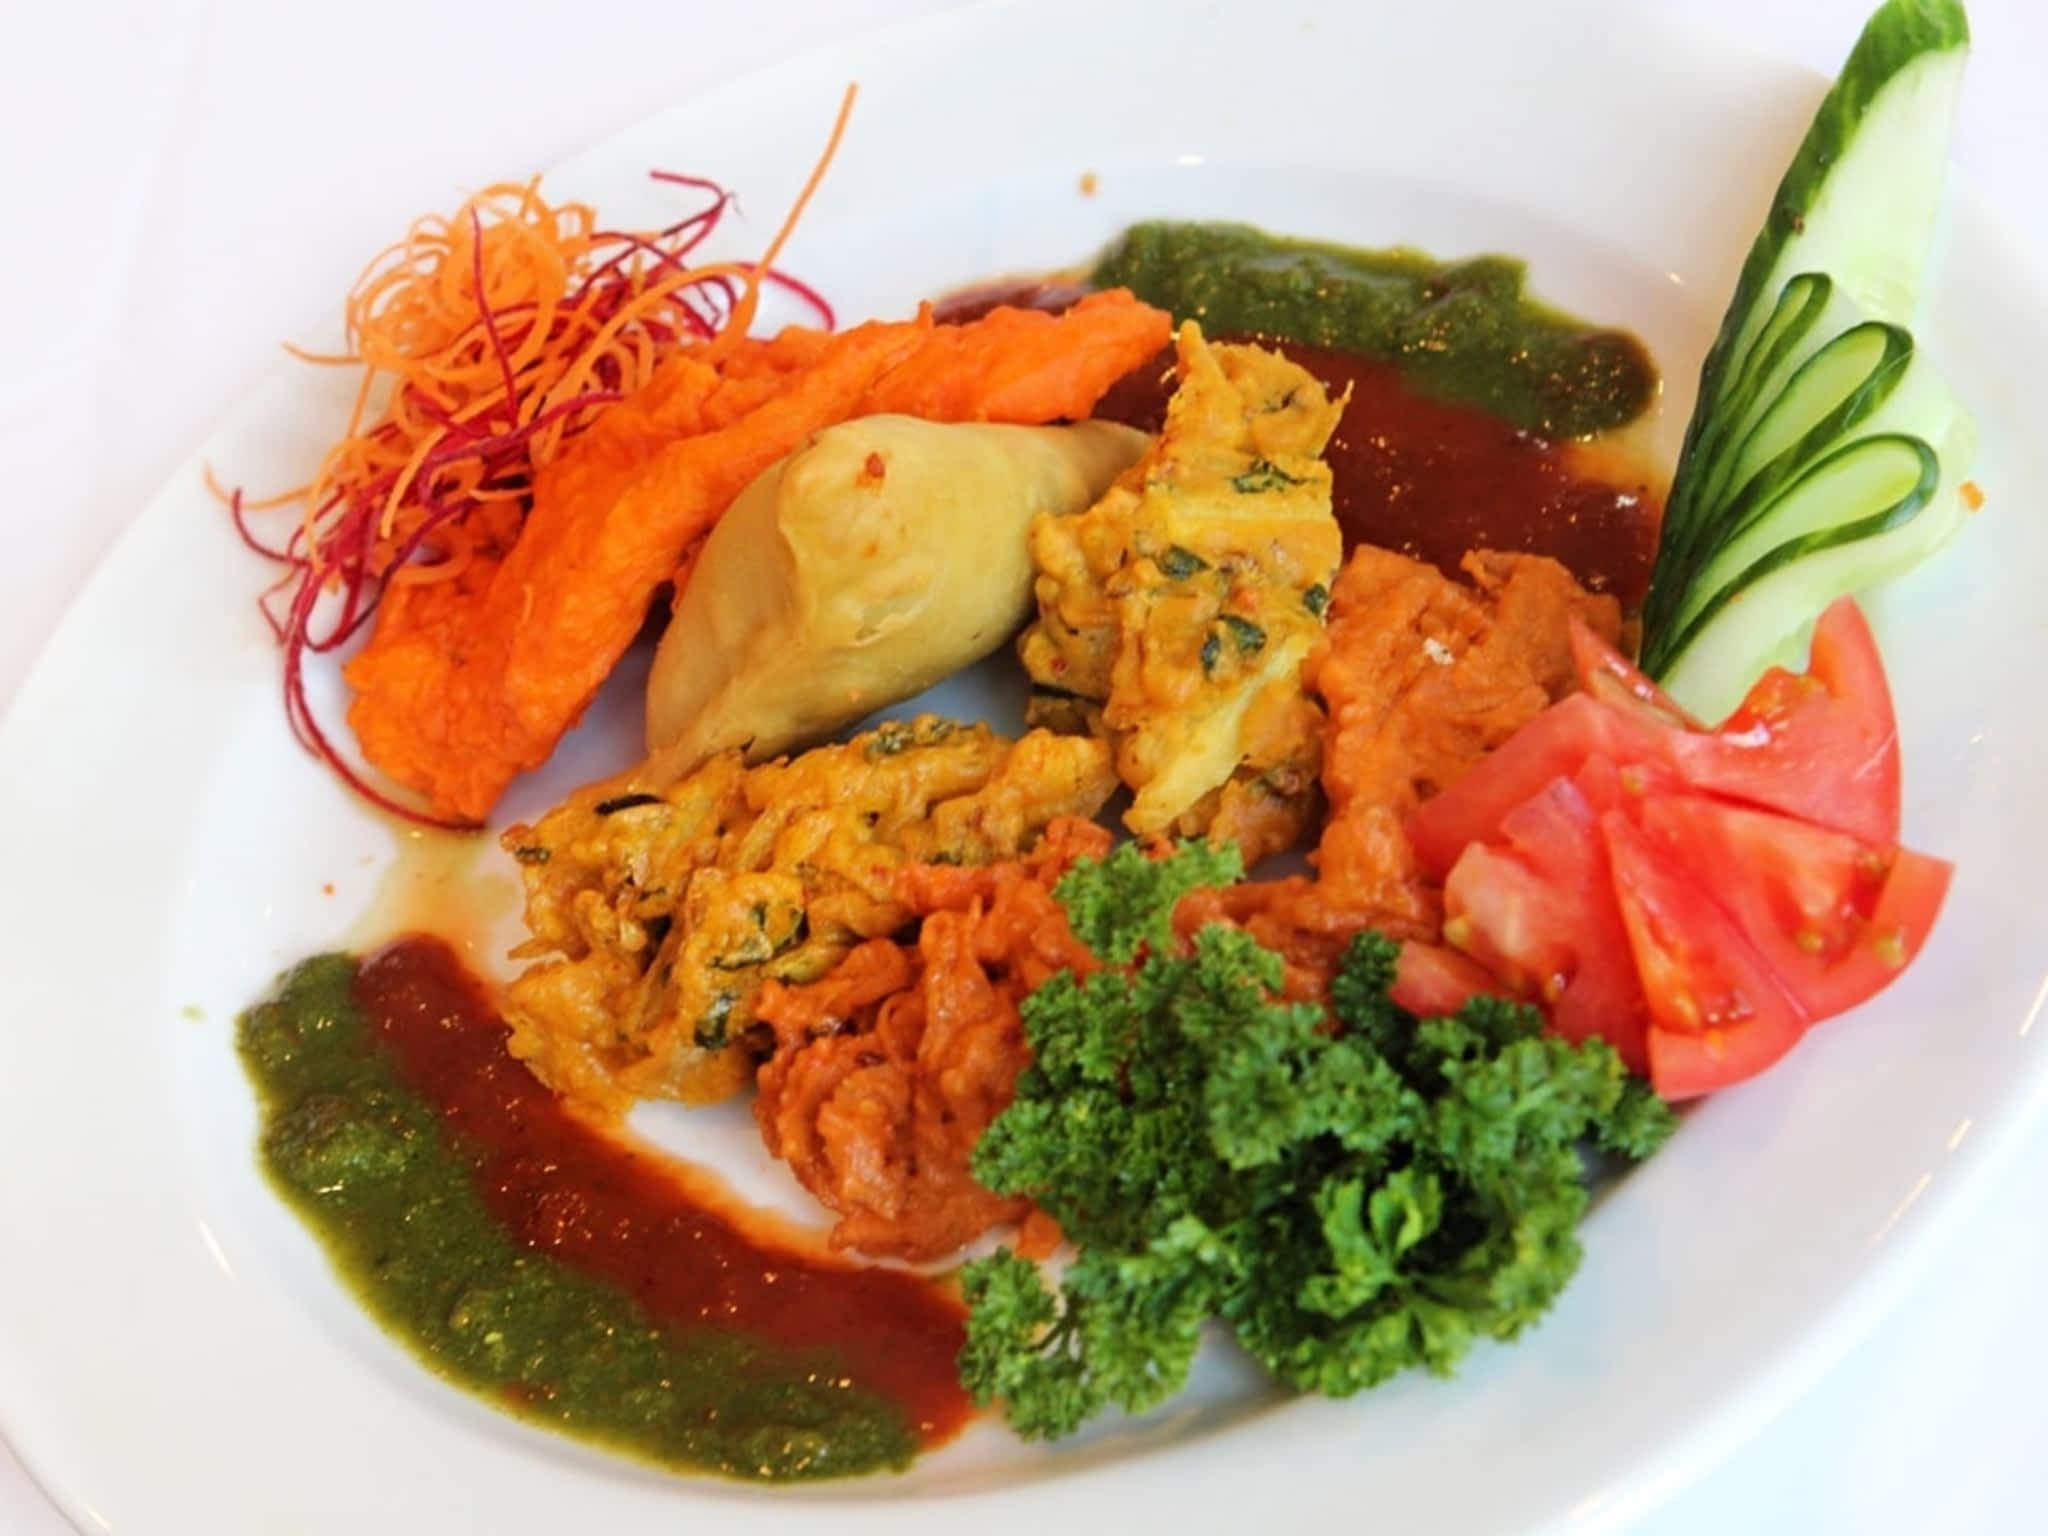 photo Aroma Fine Indian Cuisine